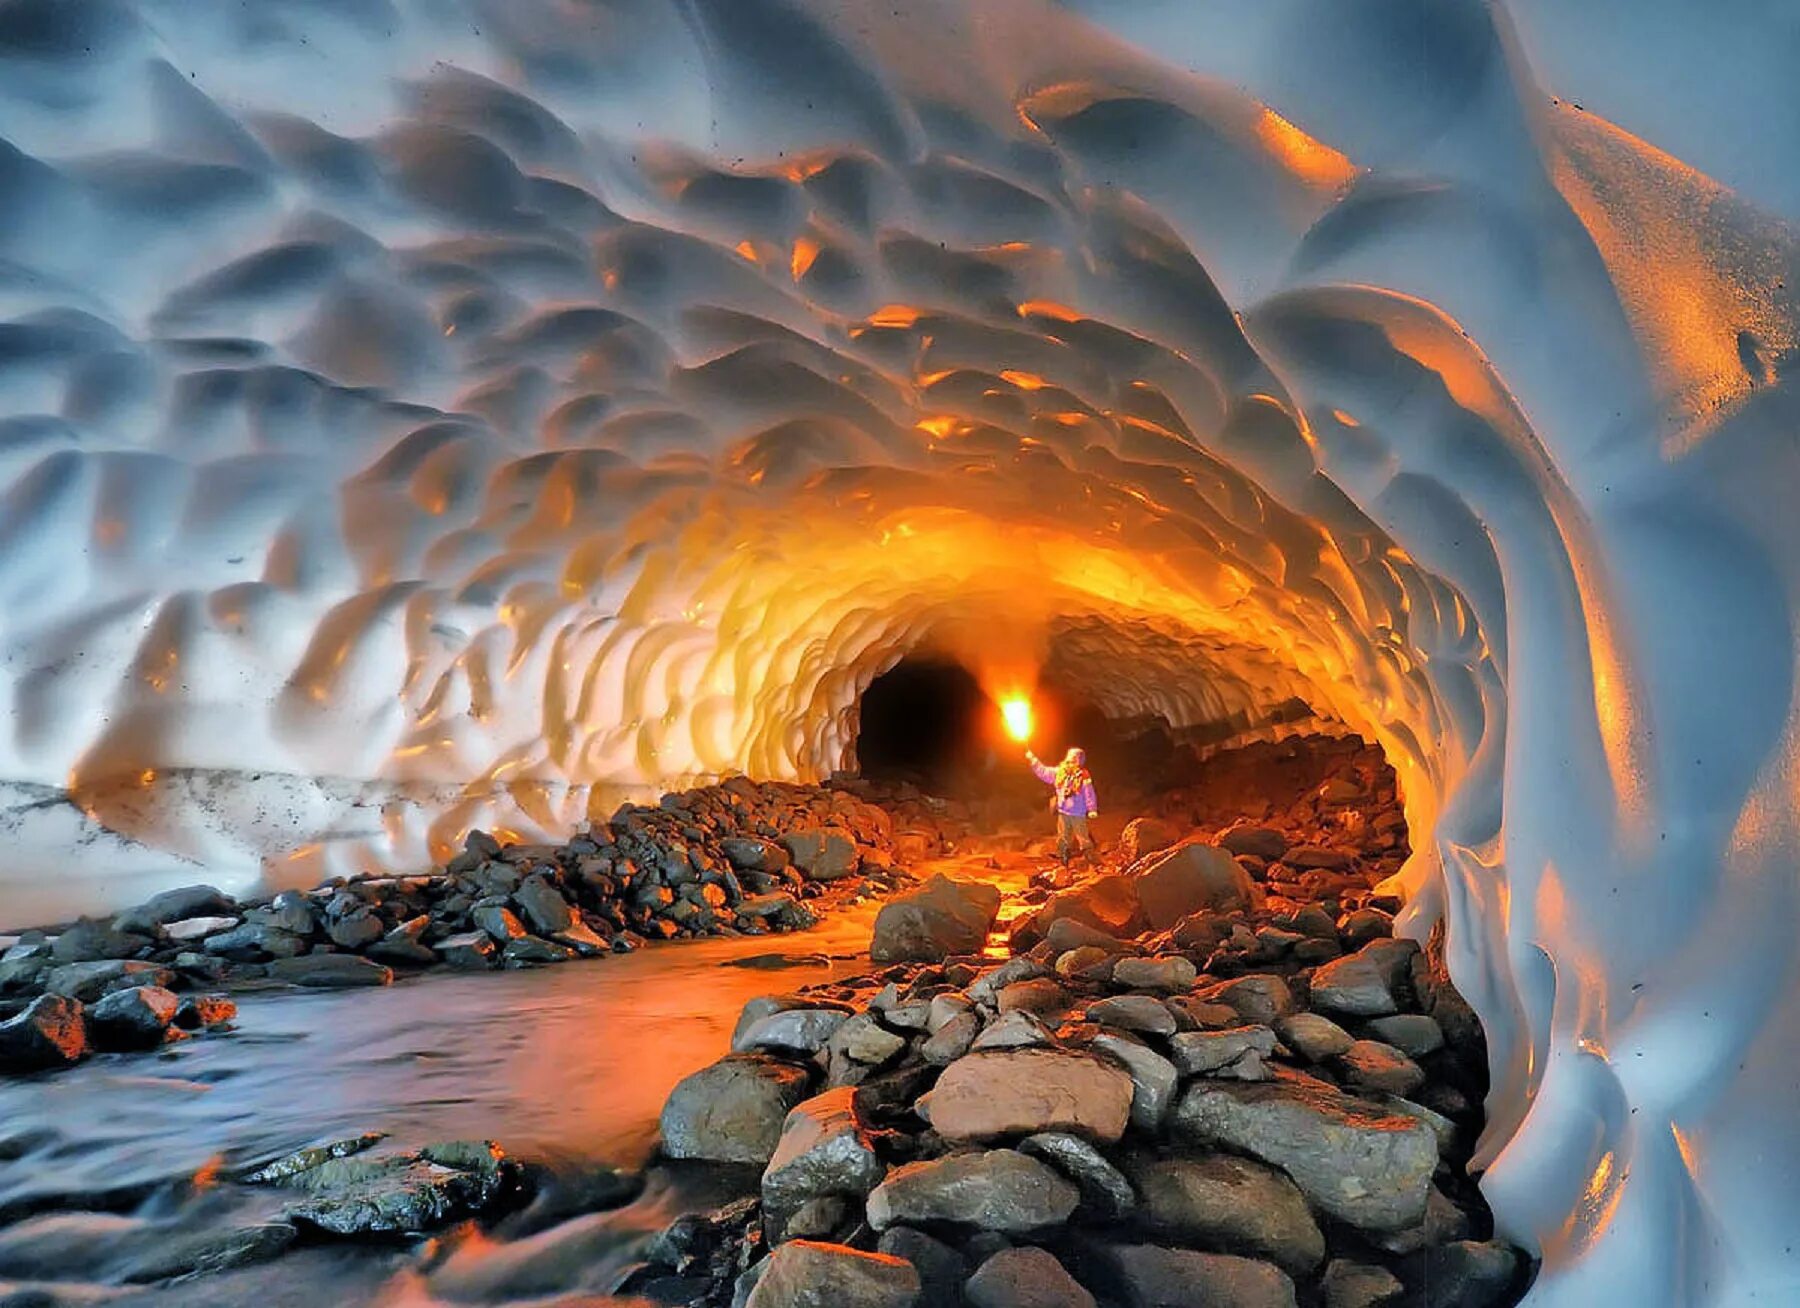 Лавовые пещеры вулкана Горелый. Вулкан Мутновский Ледяная пещера. Кунгурская Ледяная пещера. Лавовые пещеры Камчатка. Невероятно сие